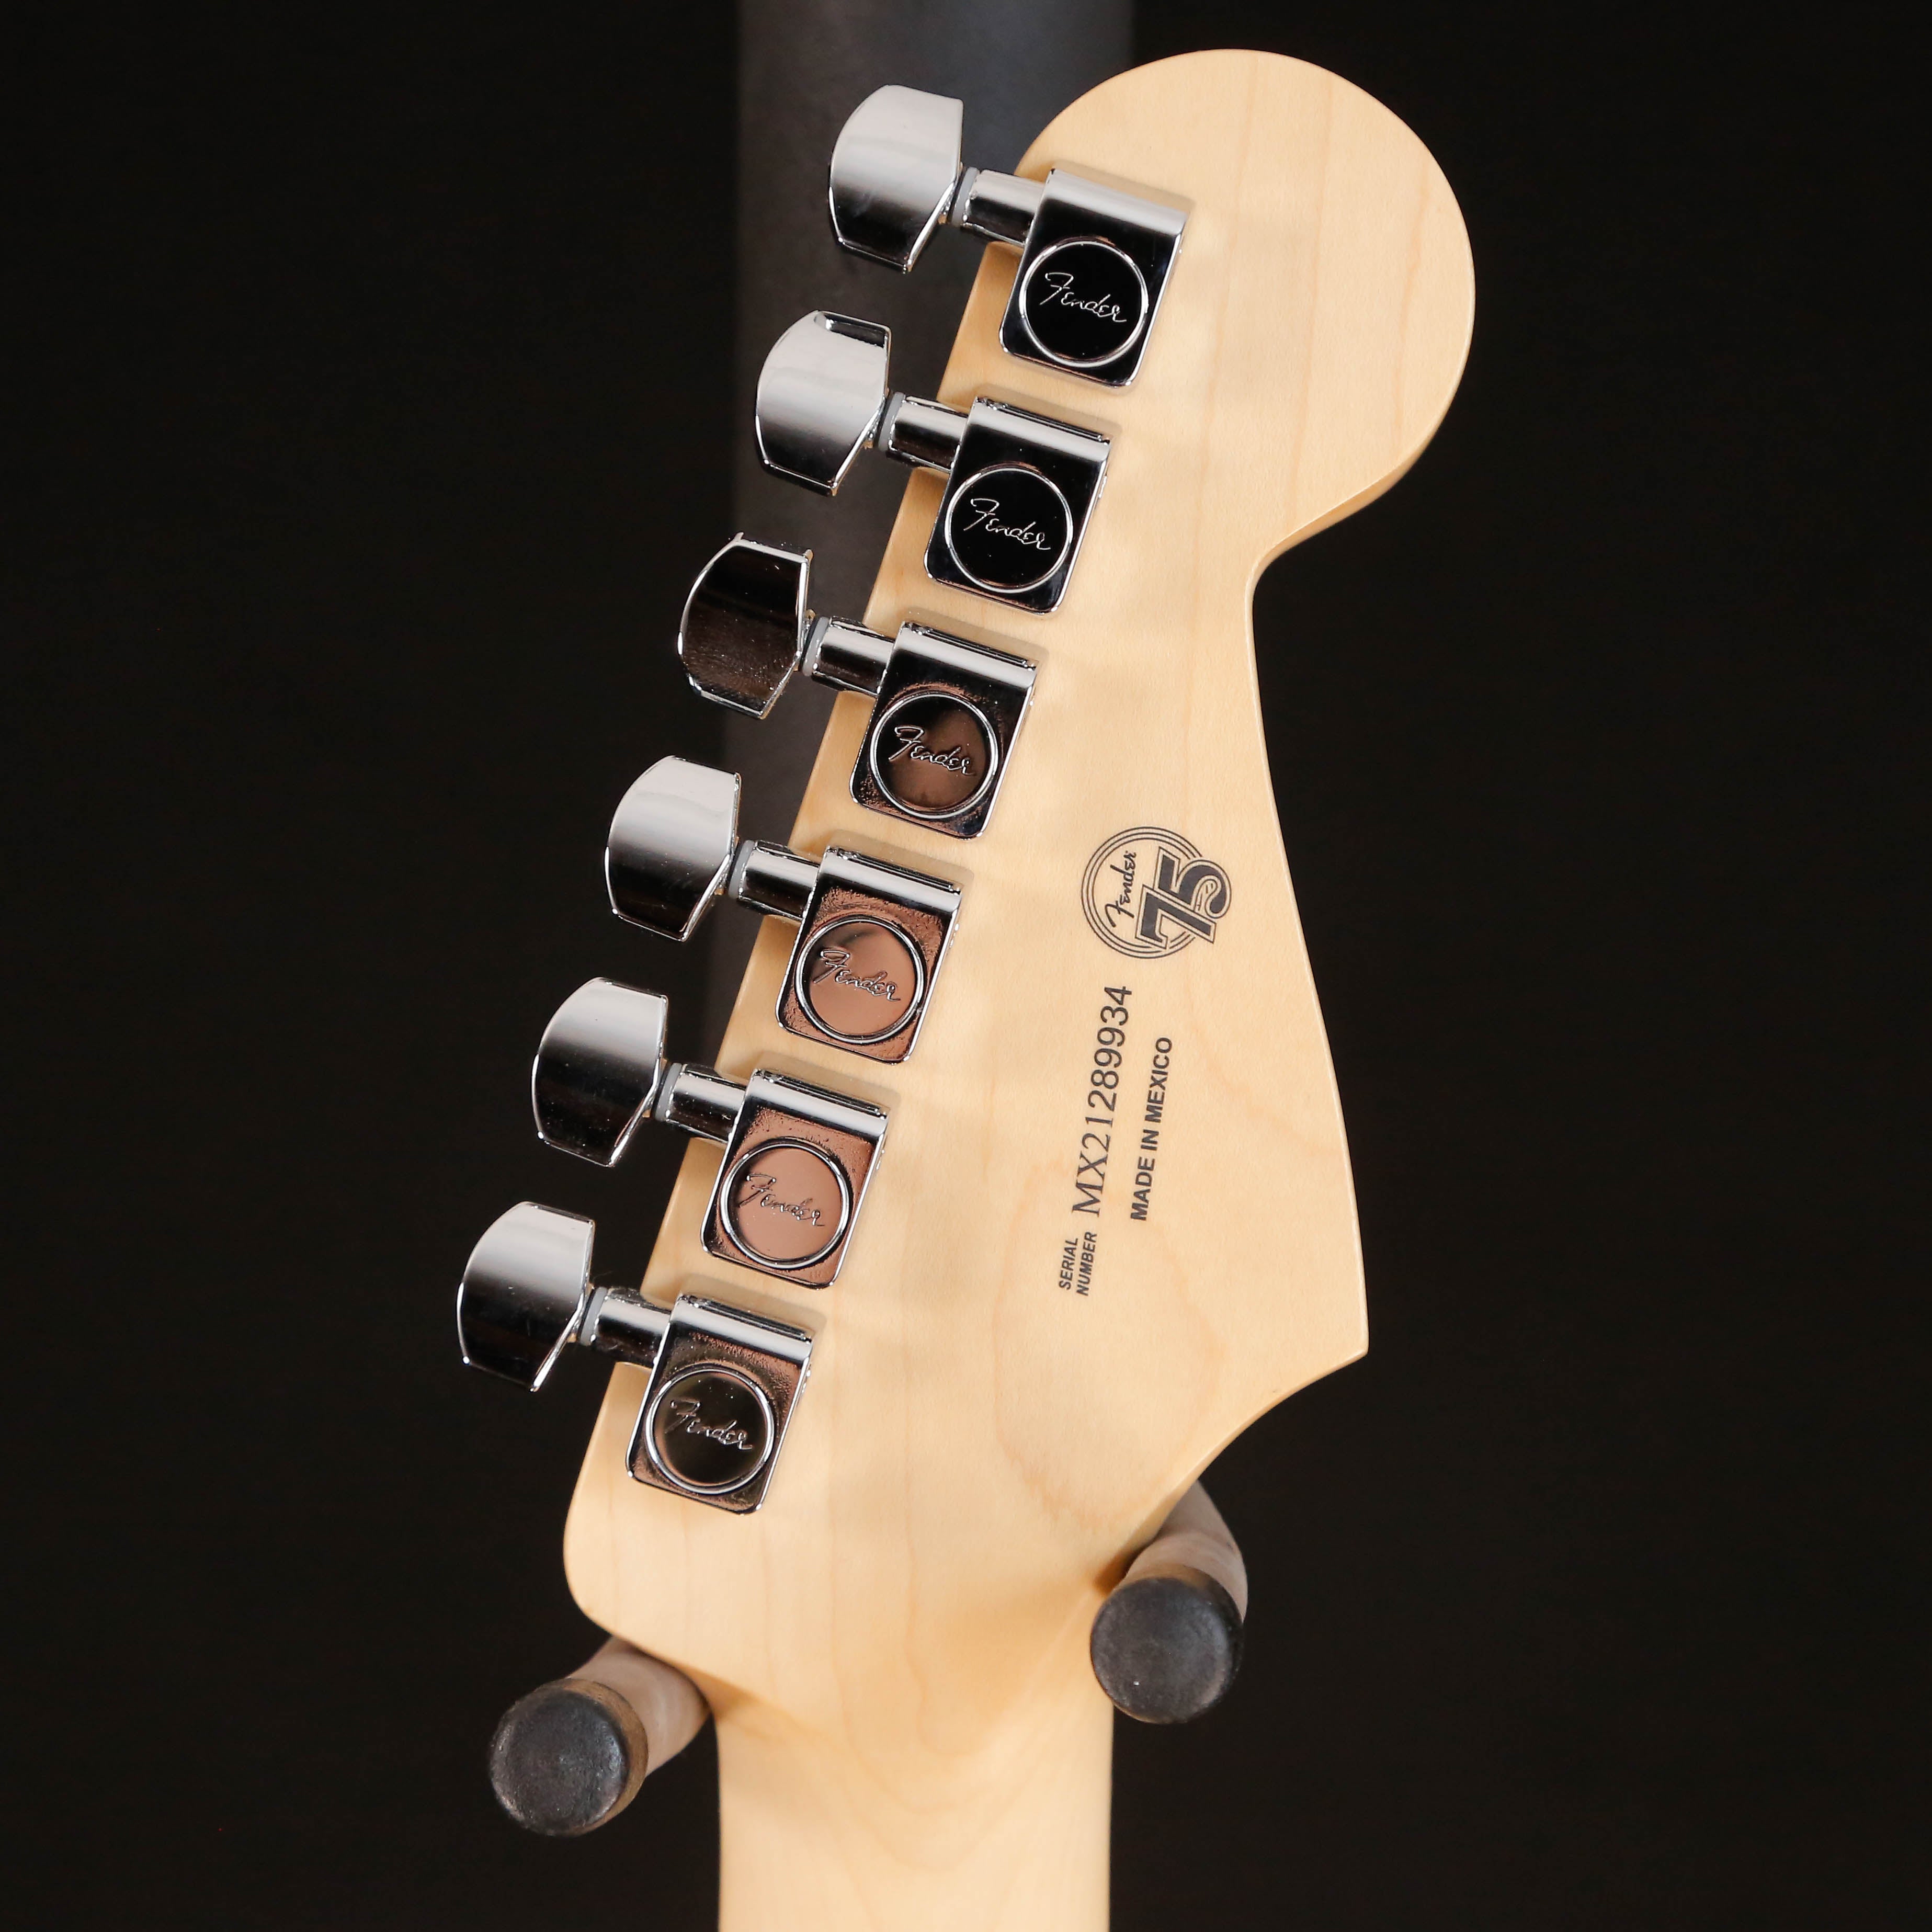 Fender Player Stratocaster Left-Handed, Maple Fb, Tidepool